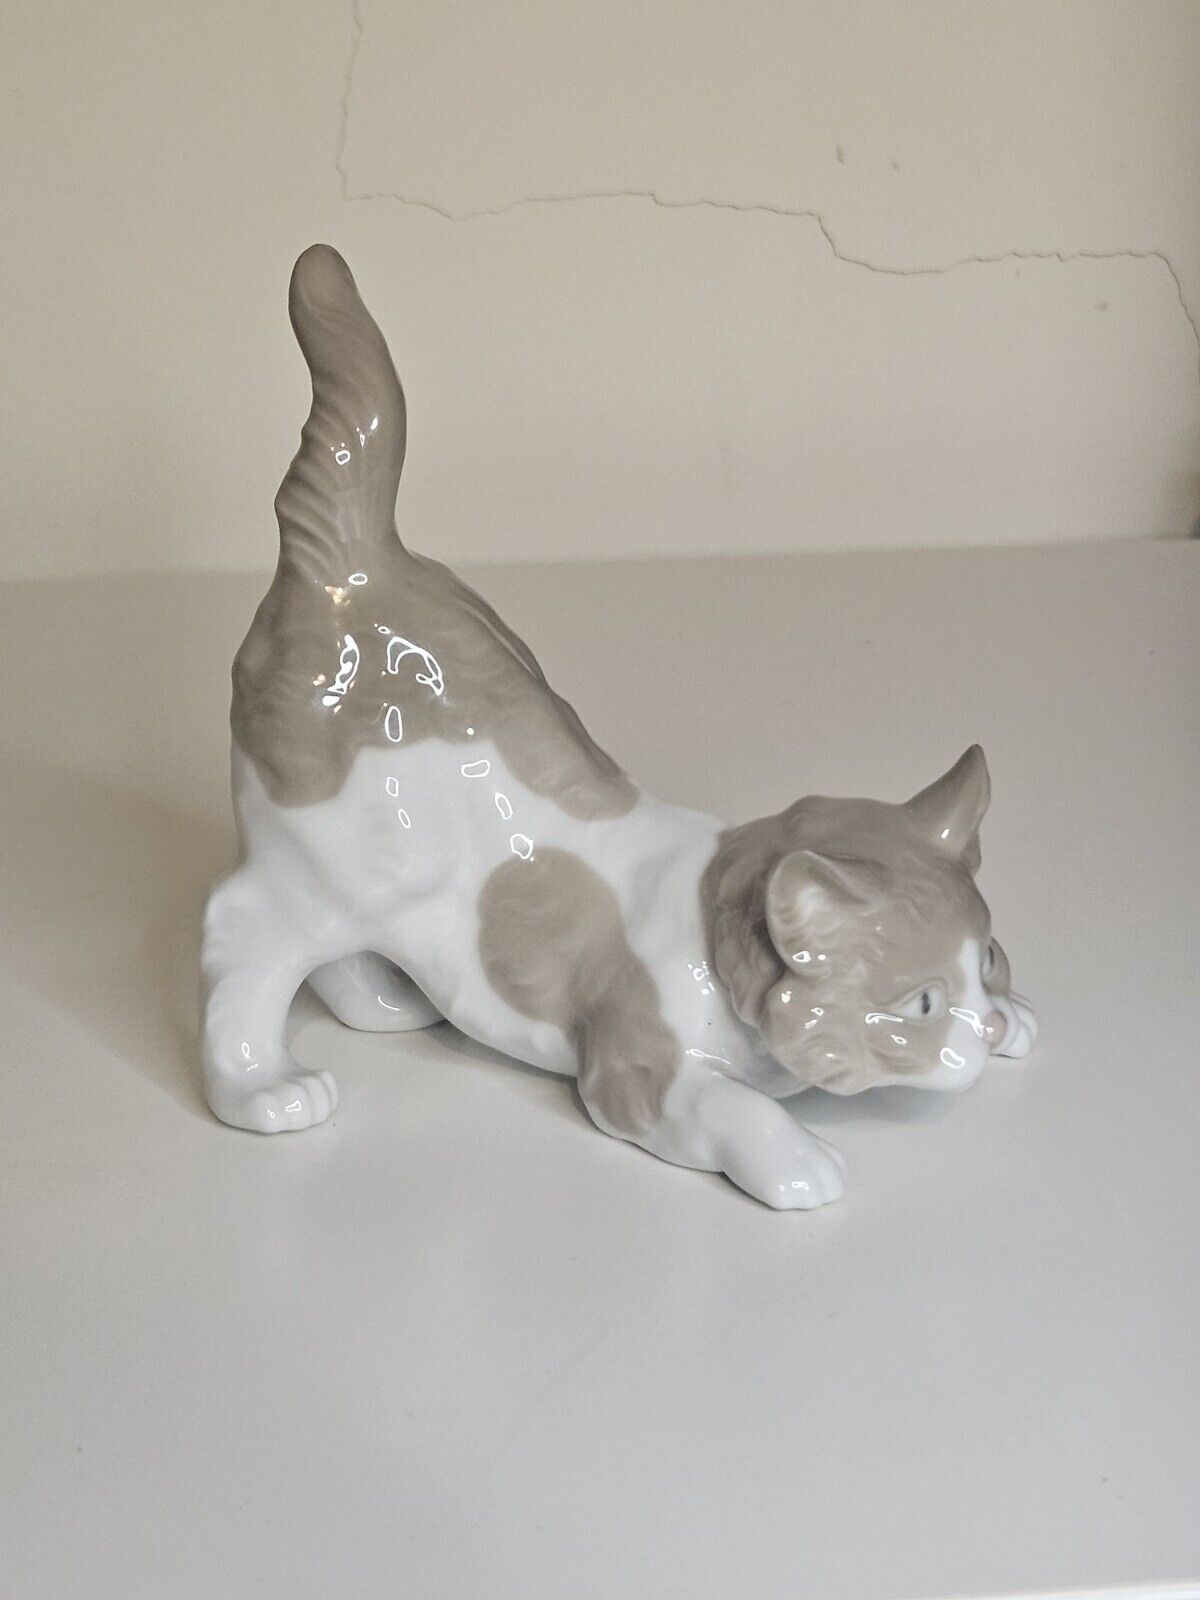 Vintage Lladro Porcelain 5091 Playful Cat Brown White Kitten, Retired 1979